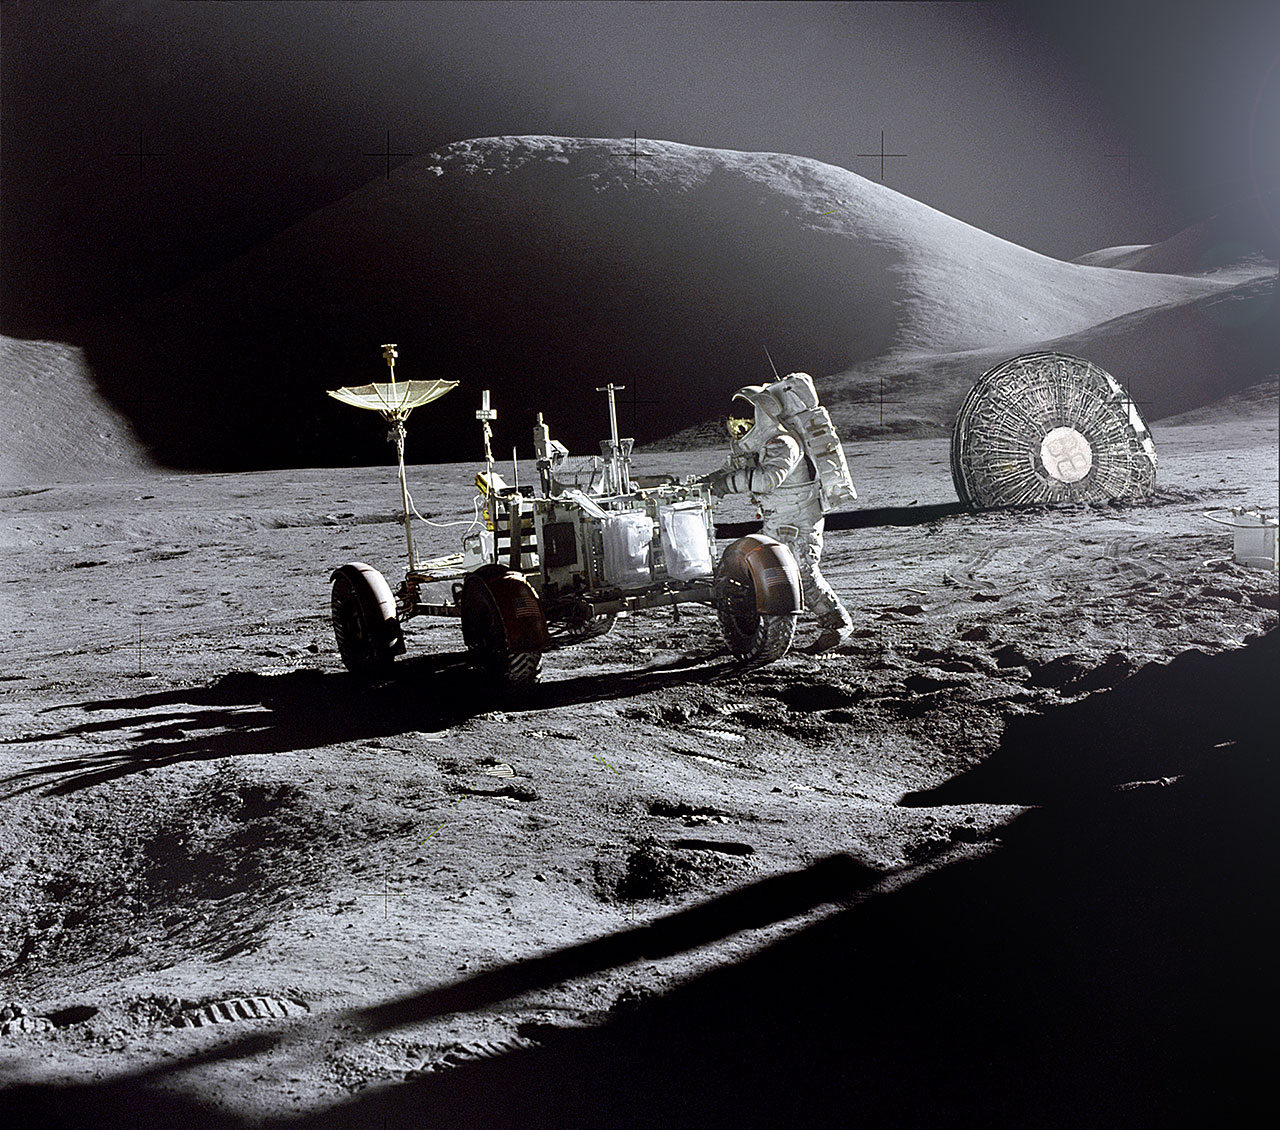 Φωτογραφίες από αρχαίο πολιτισμό στην Σελήνη δημοσίευσε πρώην στέλεχος της NASA - Φωτογραφία 15